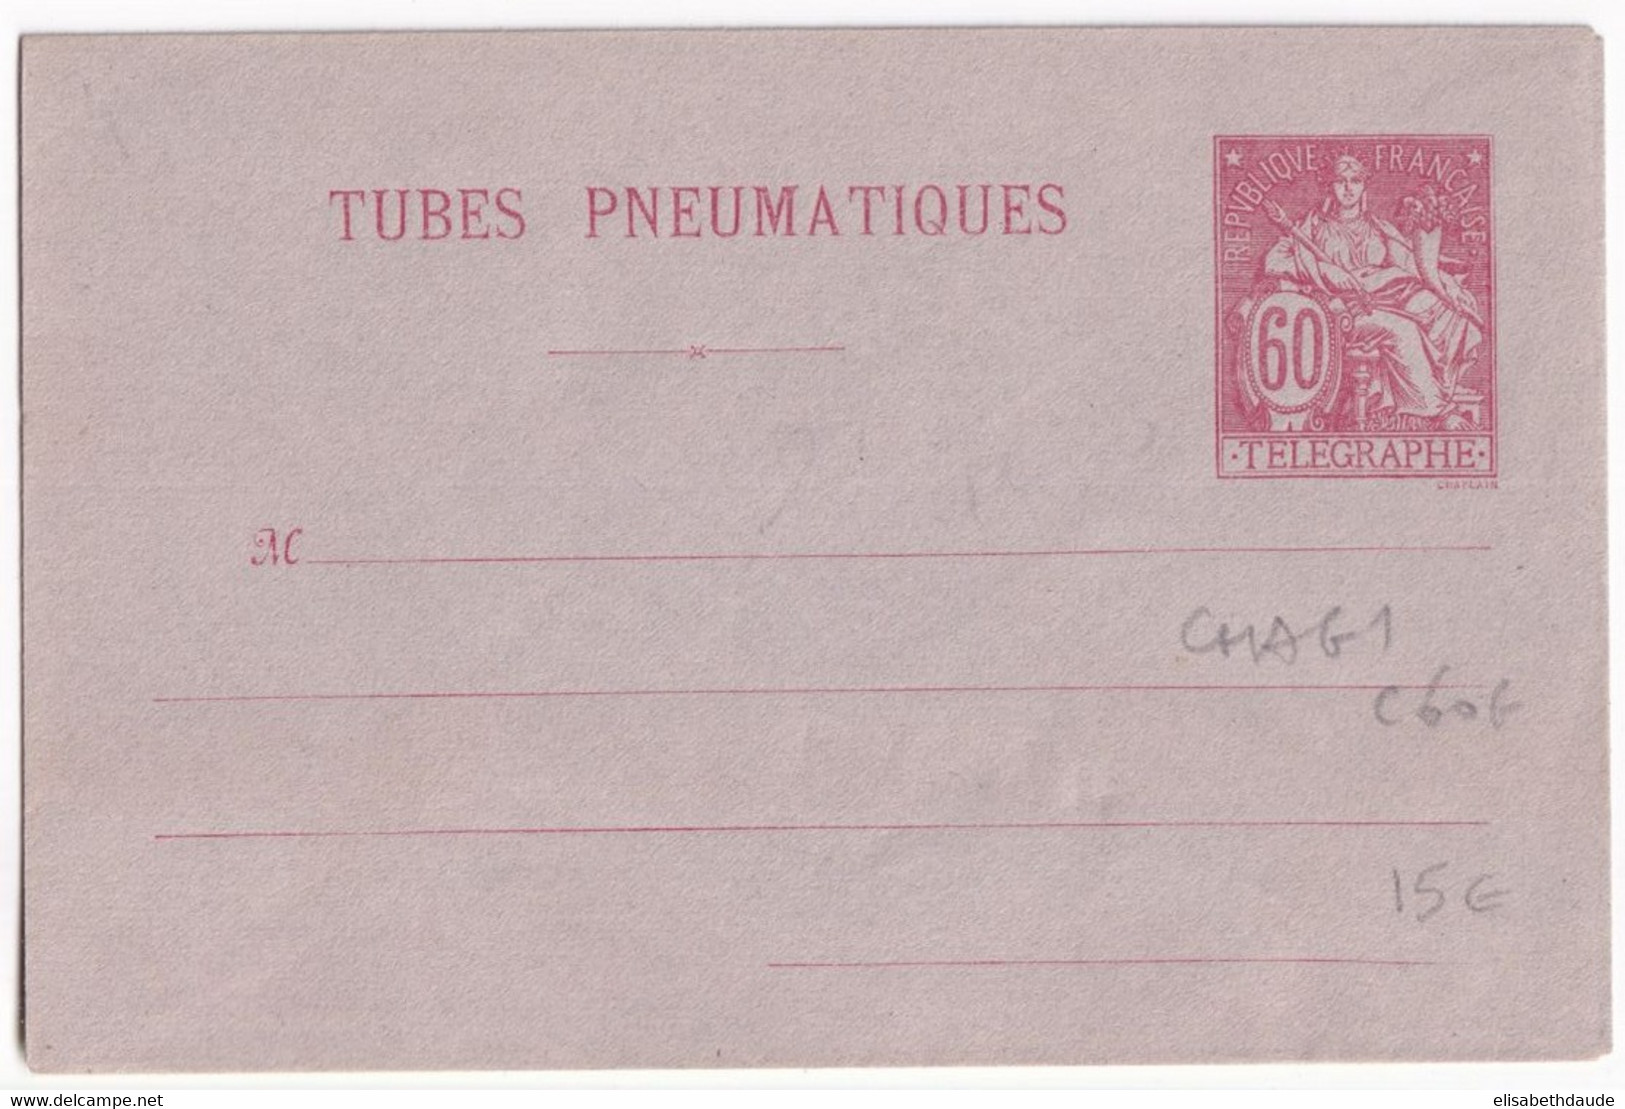 PNEUMATIQUE - 1889 - ENVELOPPE ENTIER POSTAL TYPE CHAPLAIN - STORCH G1 - NEUVE - COTE 2005 = 60 EUR. - Rohrpost